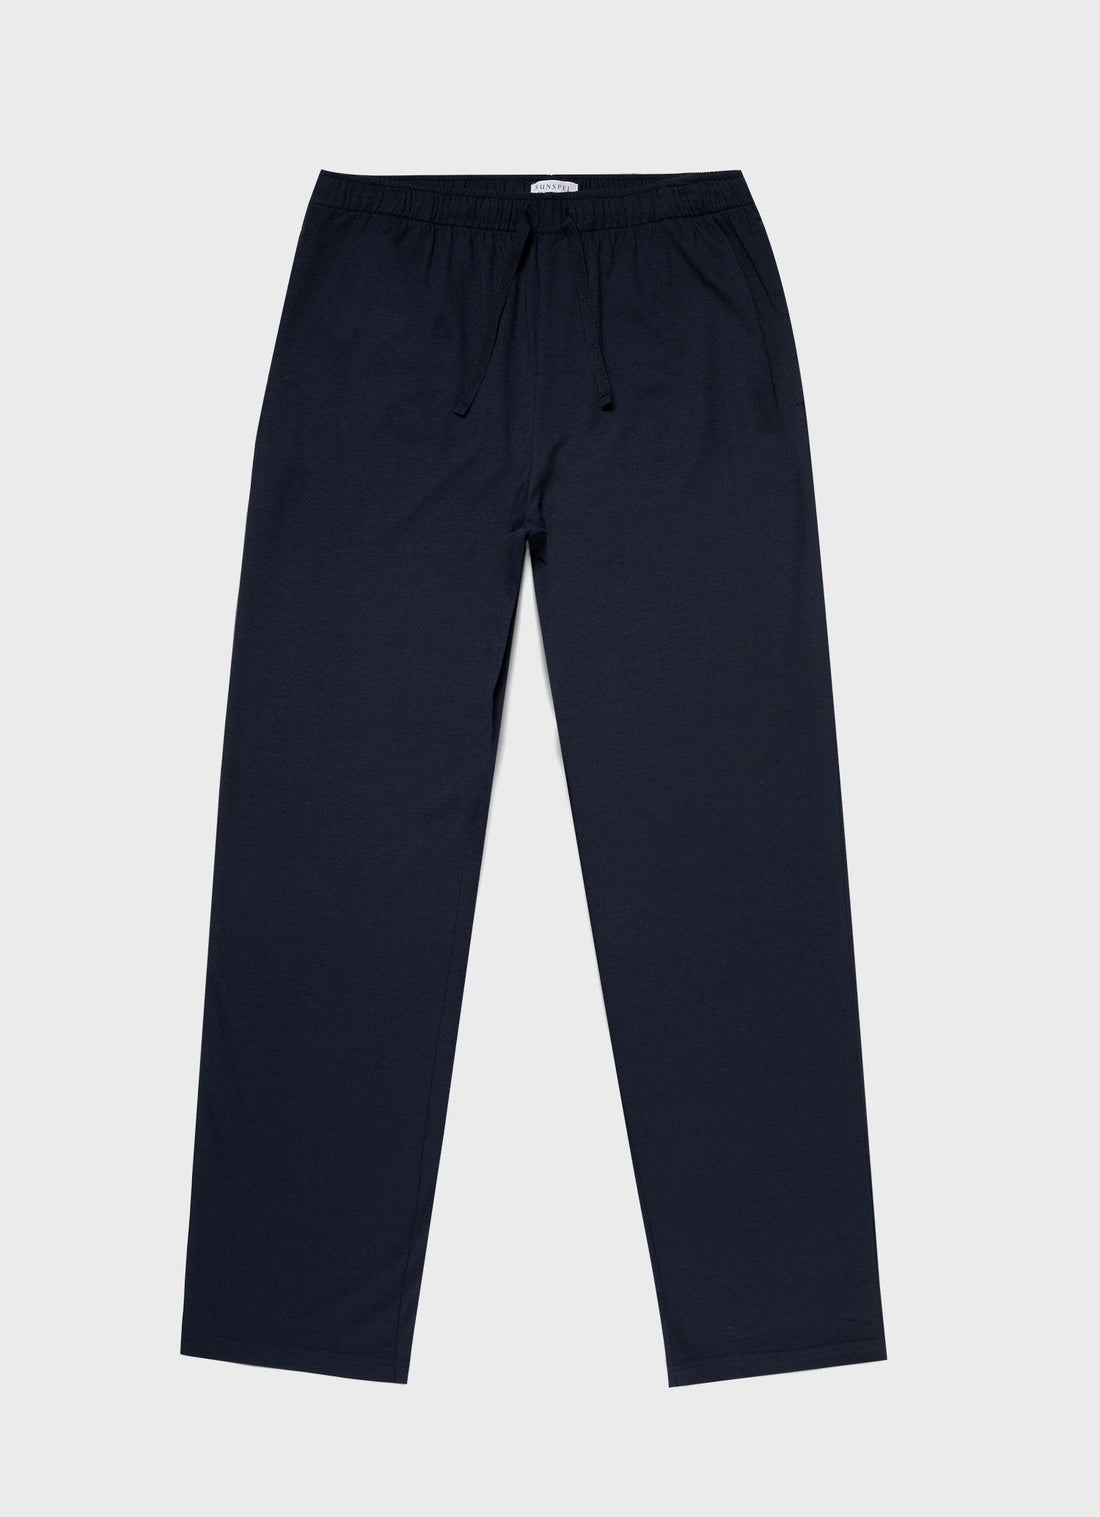 Buy Mens Pyjama Pants & Pajama Pants For Men - Apella